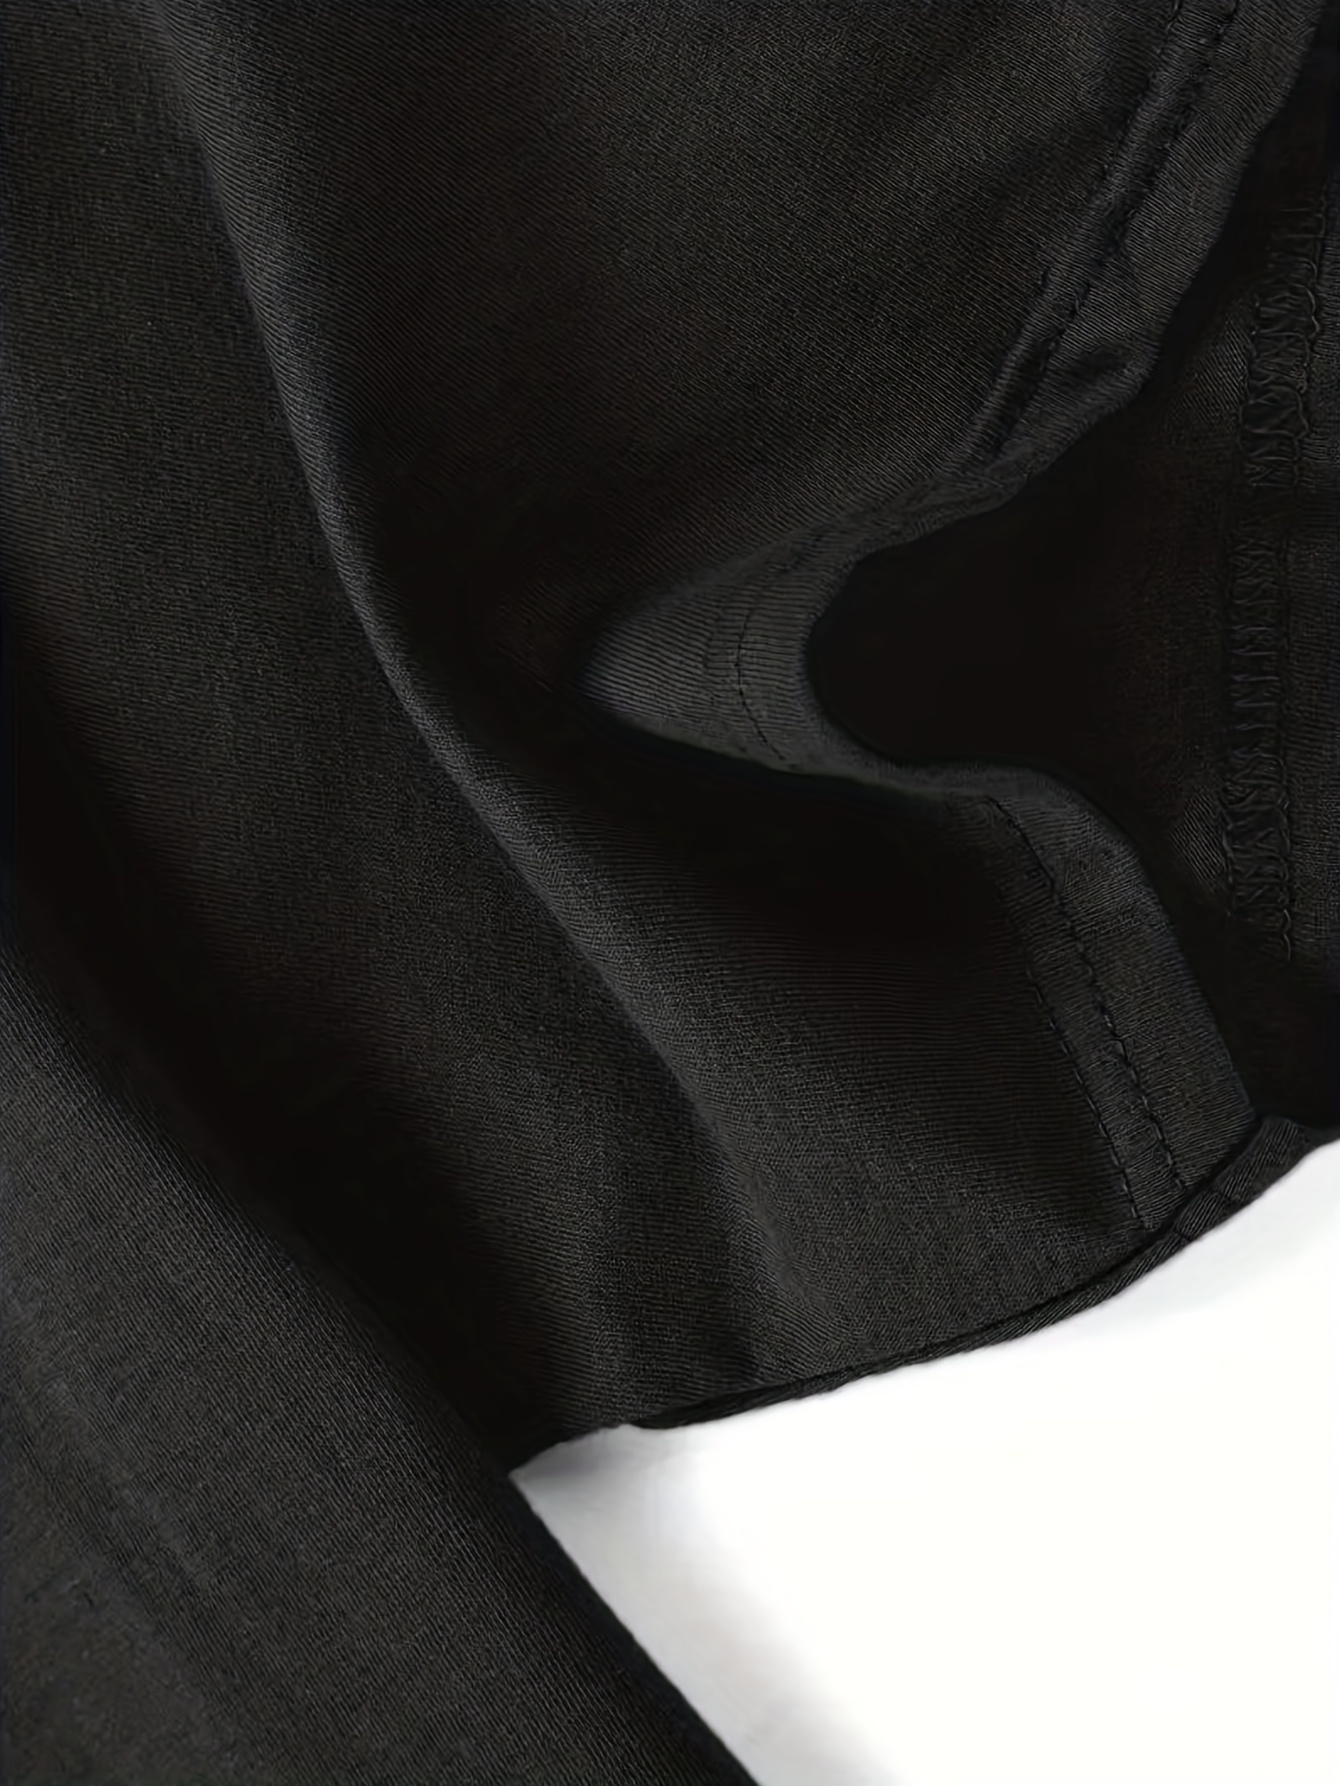 Camiseta negra manga corta - Vausen